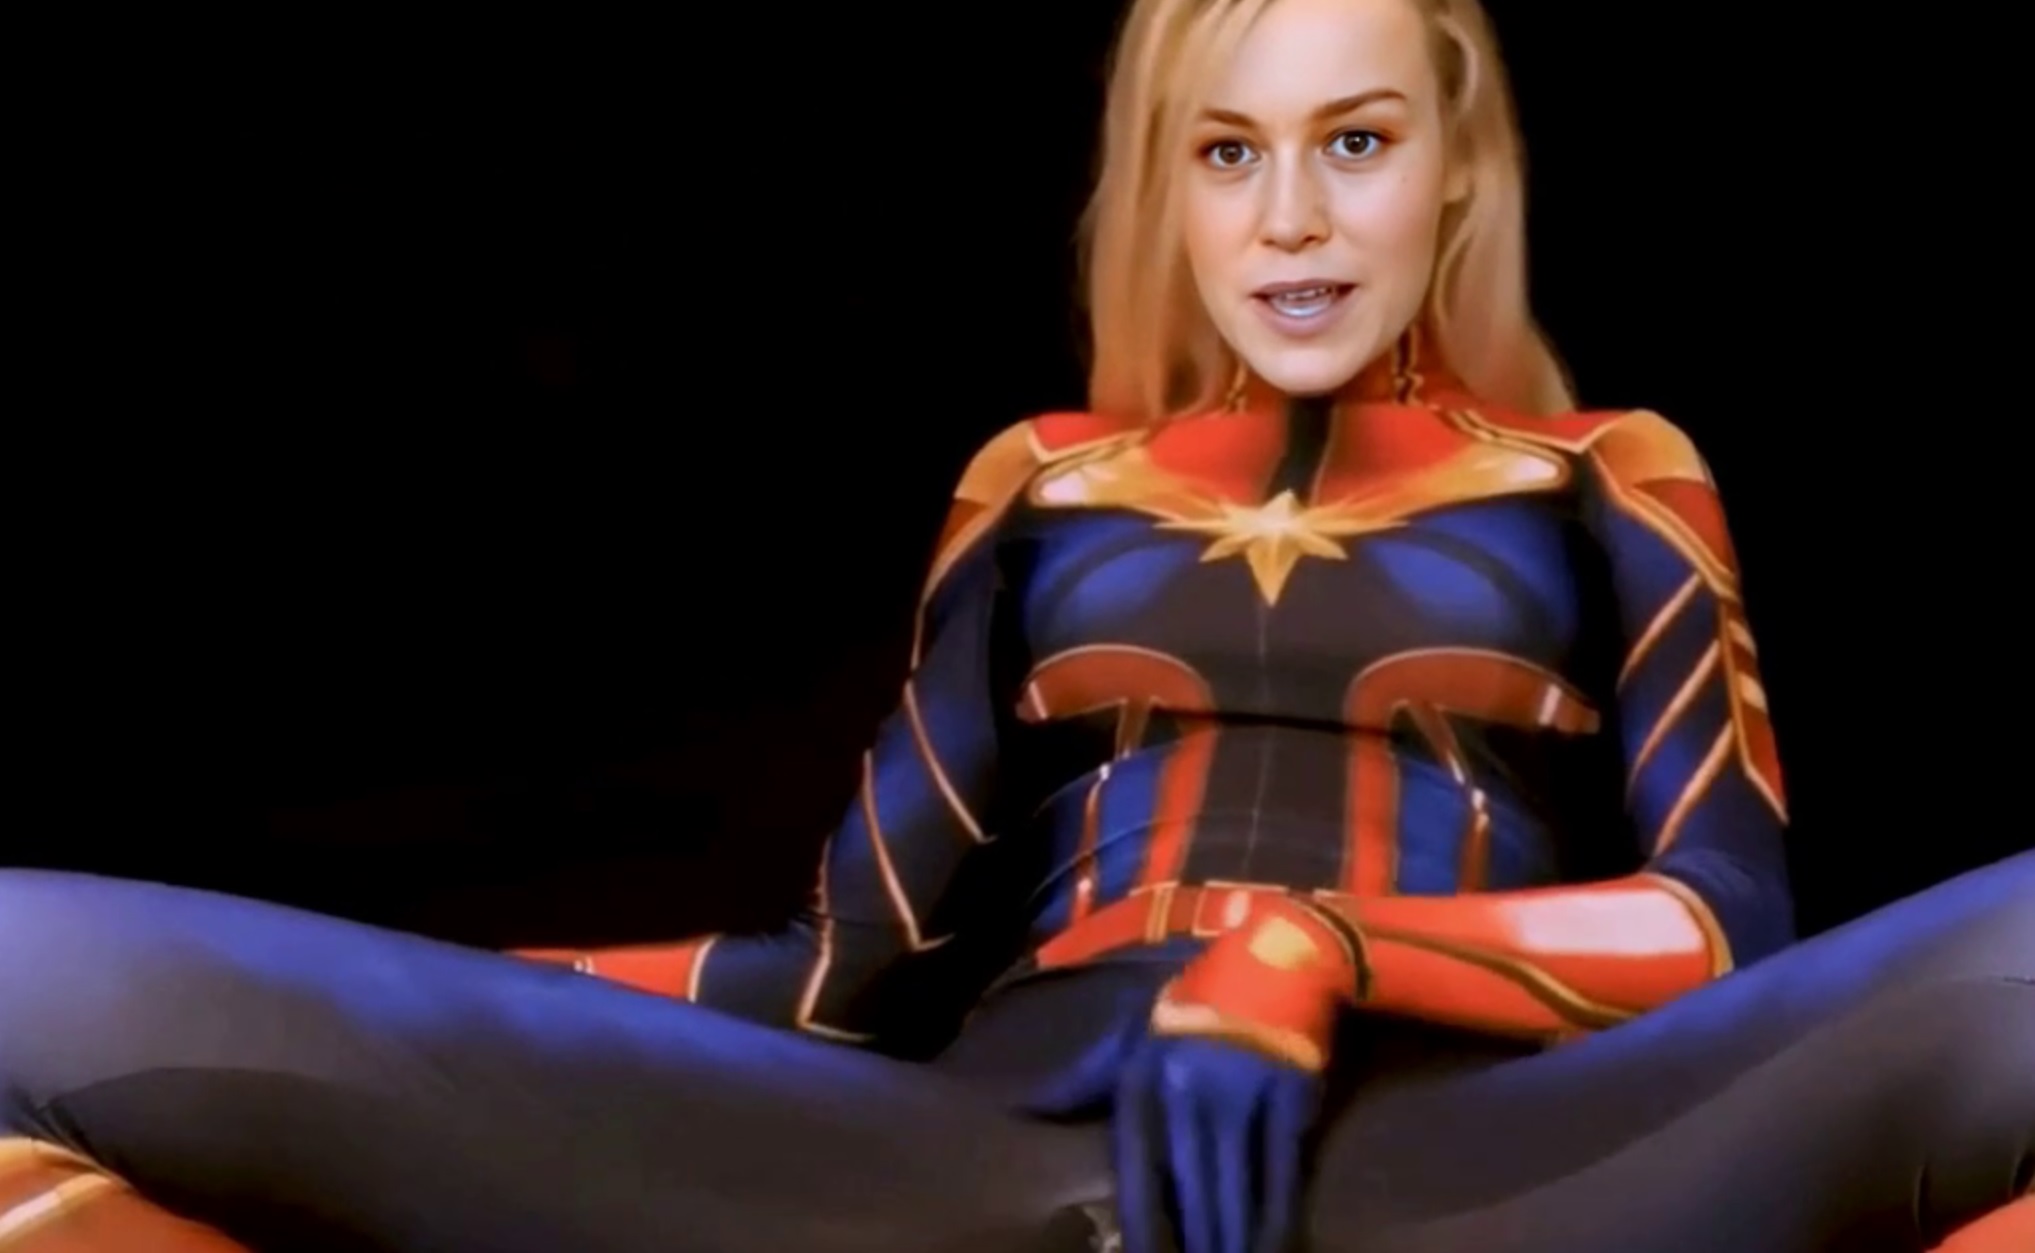 Avengers Gangbang Porn - Captain Marvel (Brie Larson) - Secret sex mission DeepFake Porn -  MrDeepFakes